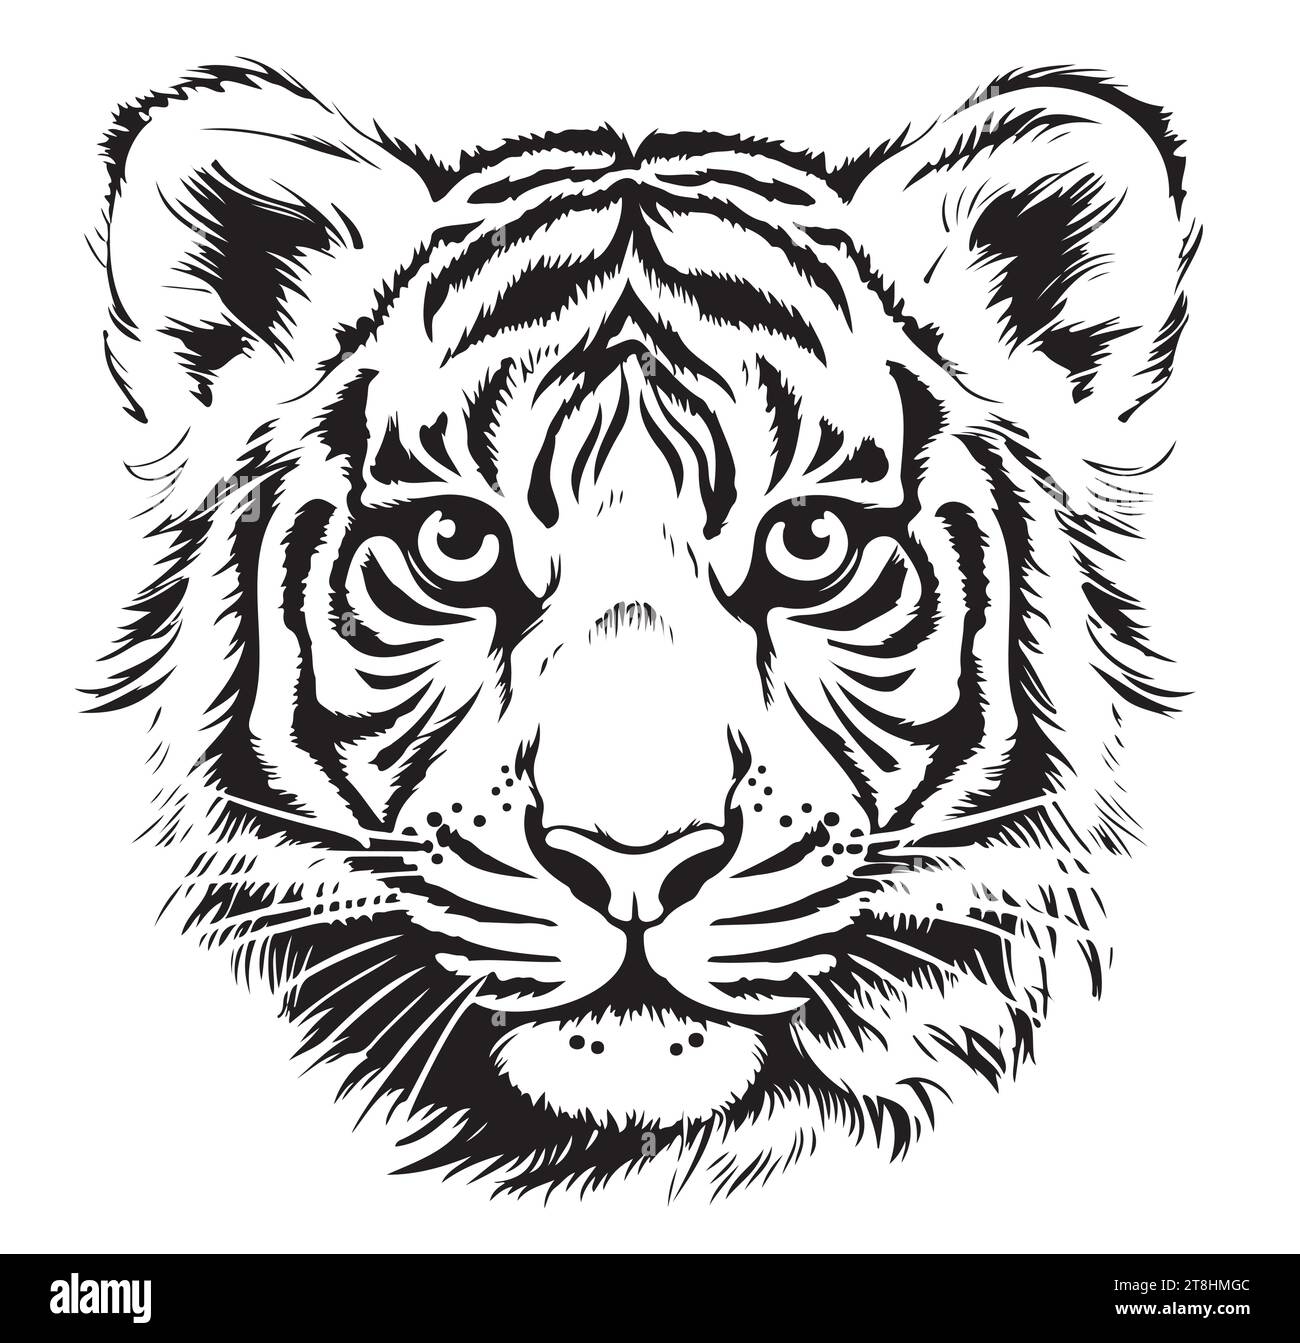 tigre dessiné avec de l'encre des mains d'un tatouage prédateur illustration vectorielle Illustration de Vecteur